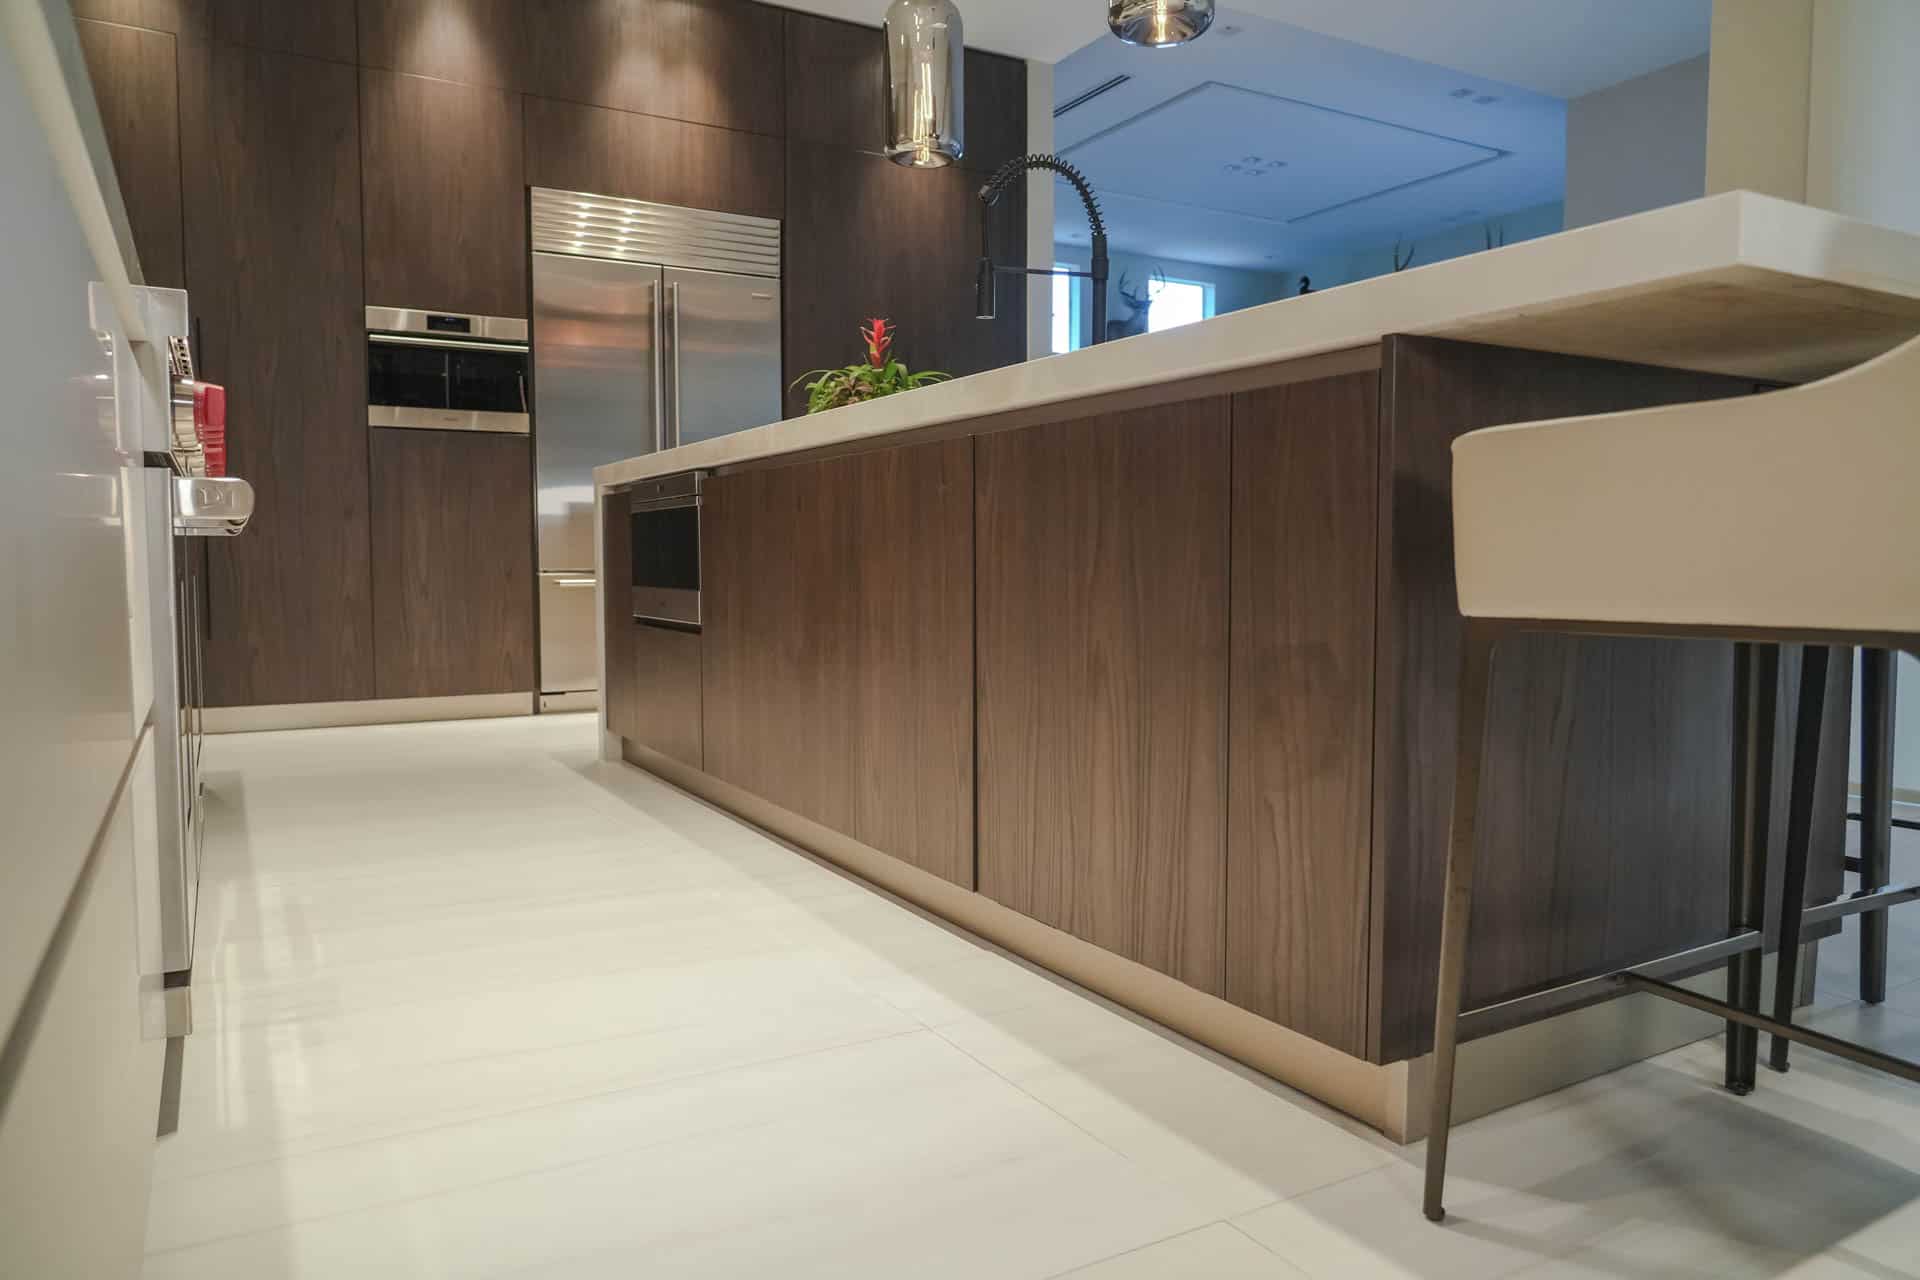 "Transform Your Kitchen with Modern Design!"